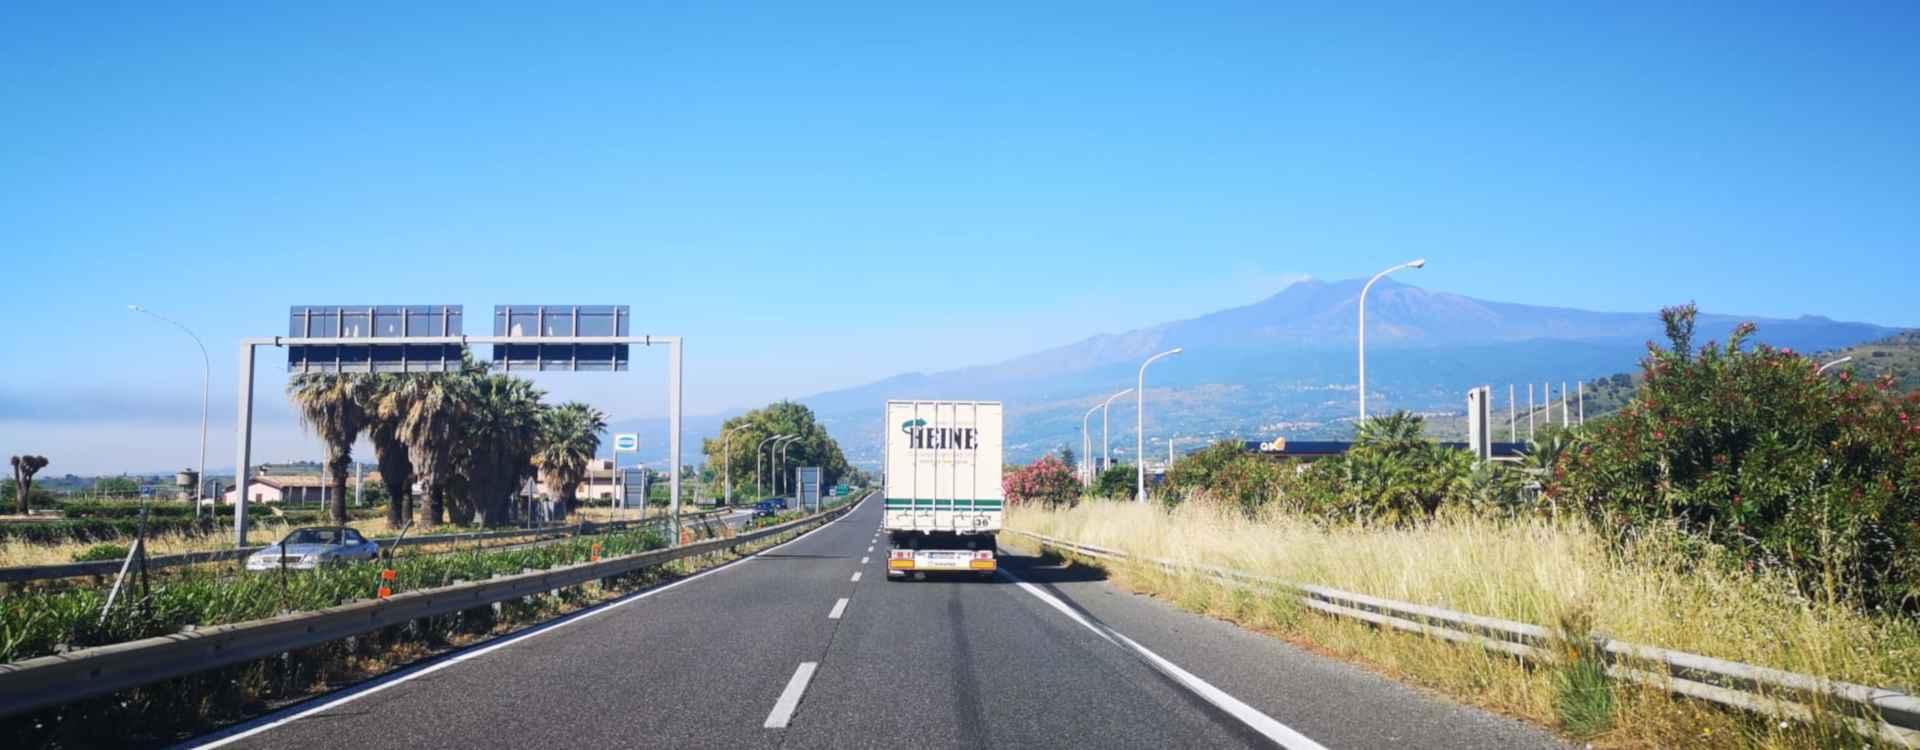 Firma Möbeltransport Heine Sizilien Italien 